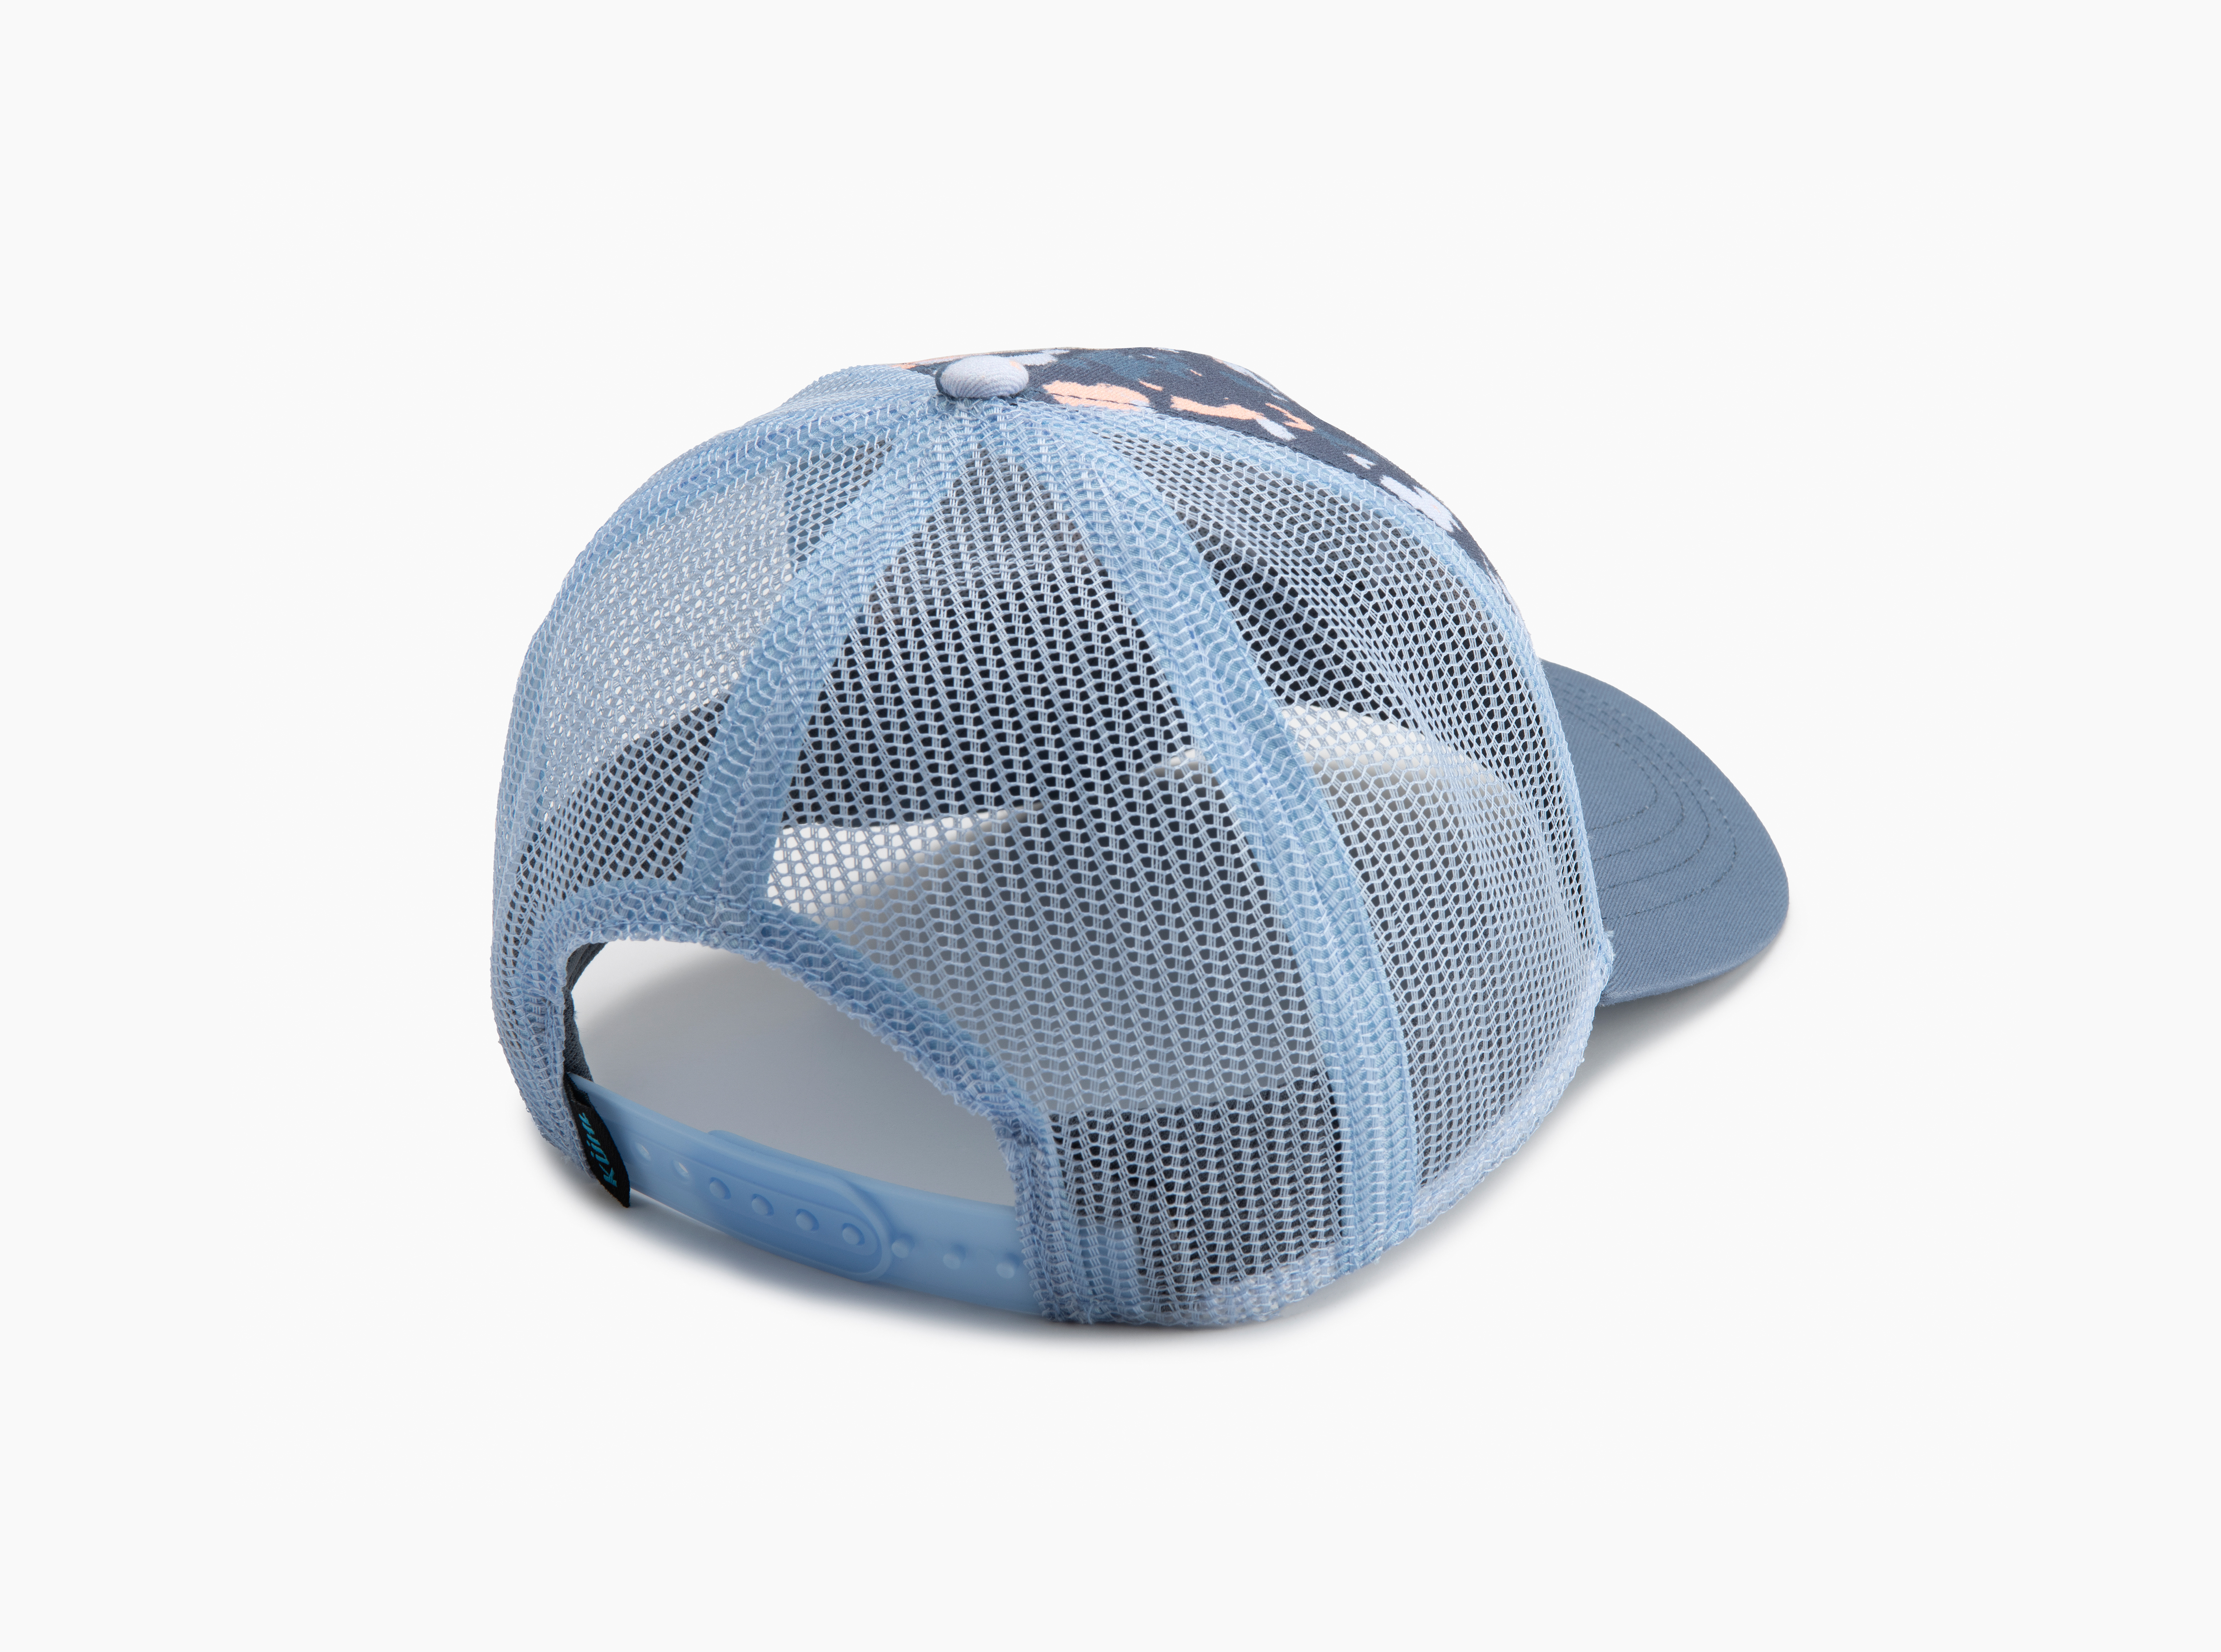 Low Profile KÜHL® Trucker Hat in Other's Bags Gear